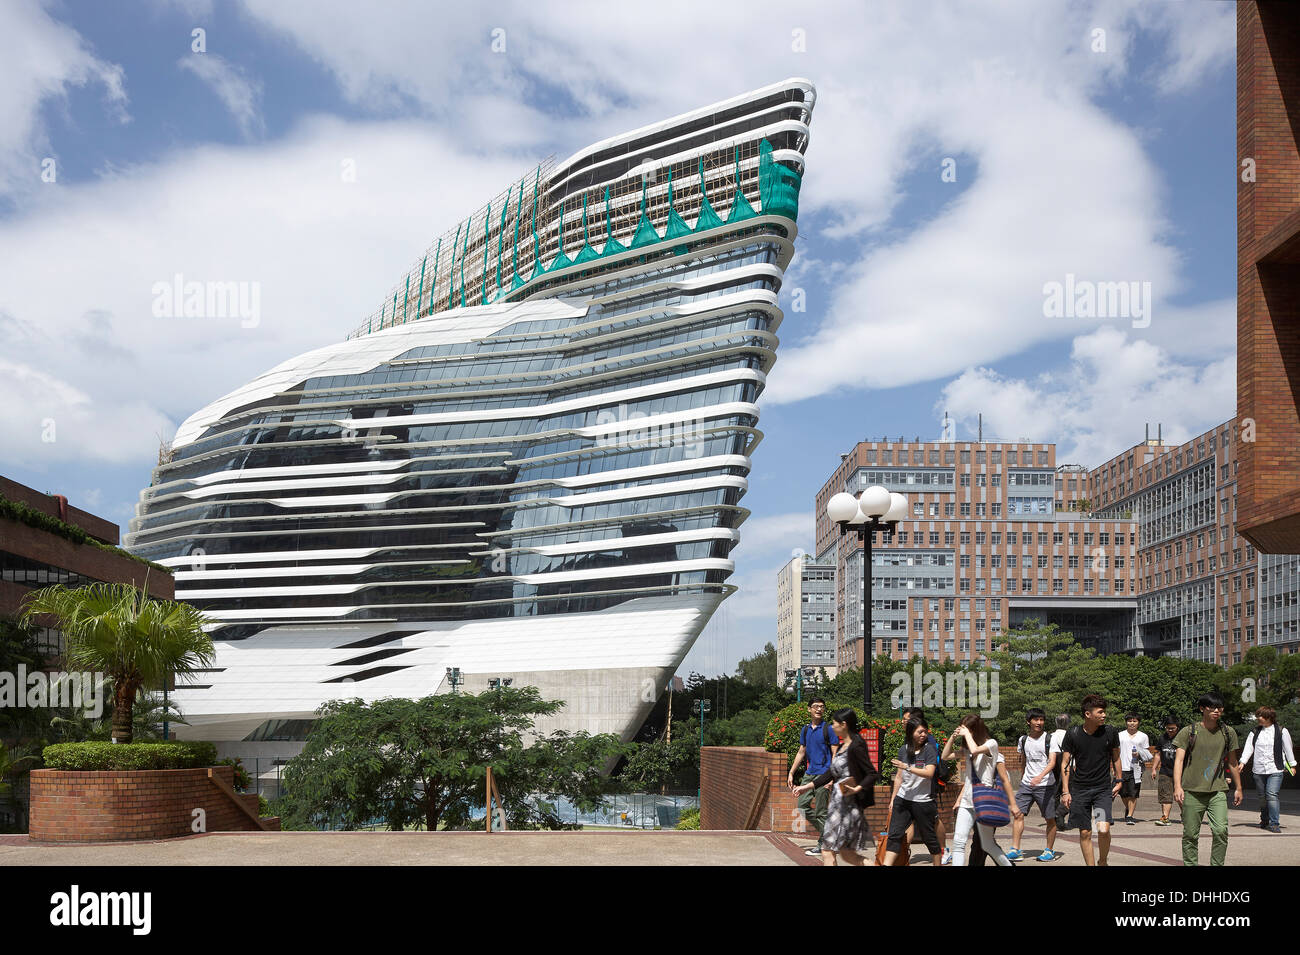 Innovation Tower, Kowloon, Hong Kong, Architect: Zaha Hadid Architects, 2013. Stock Photo